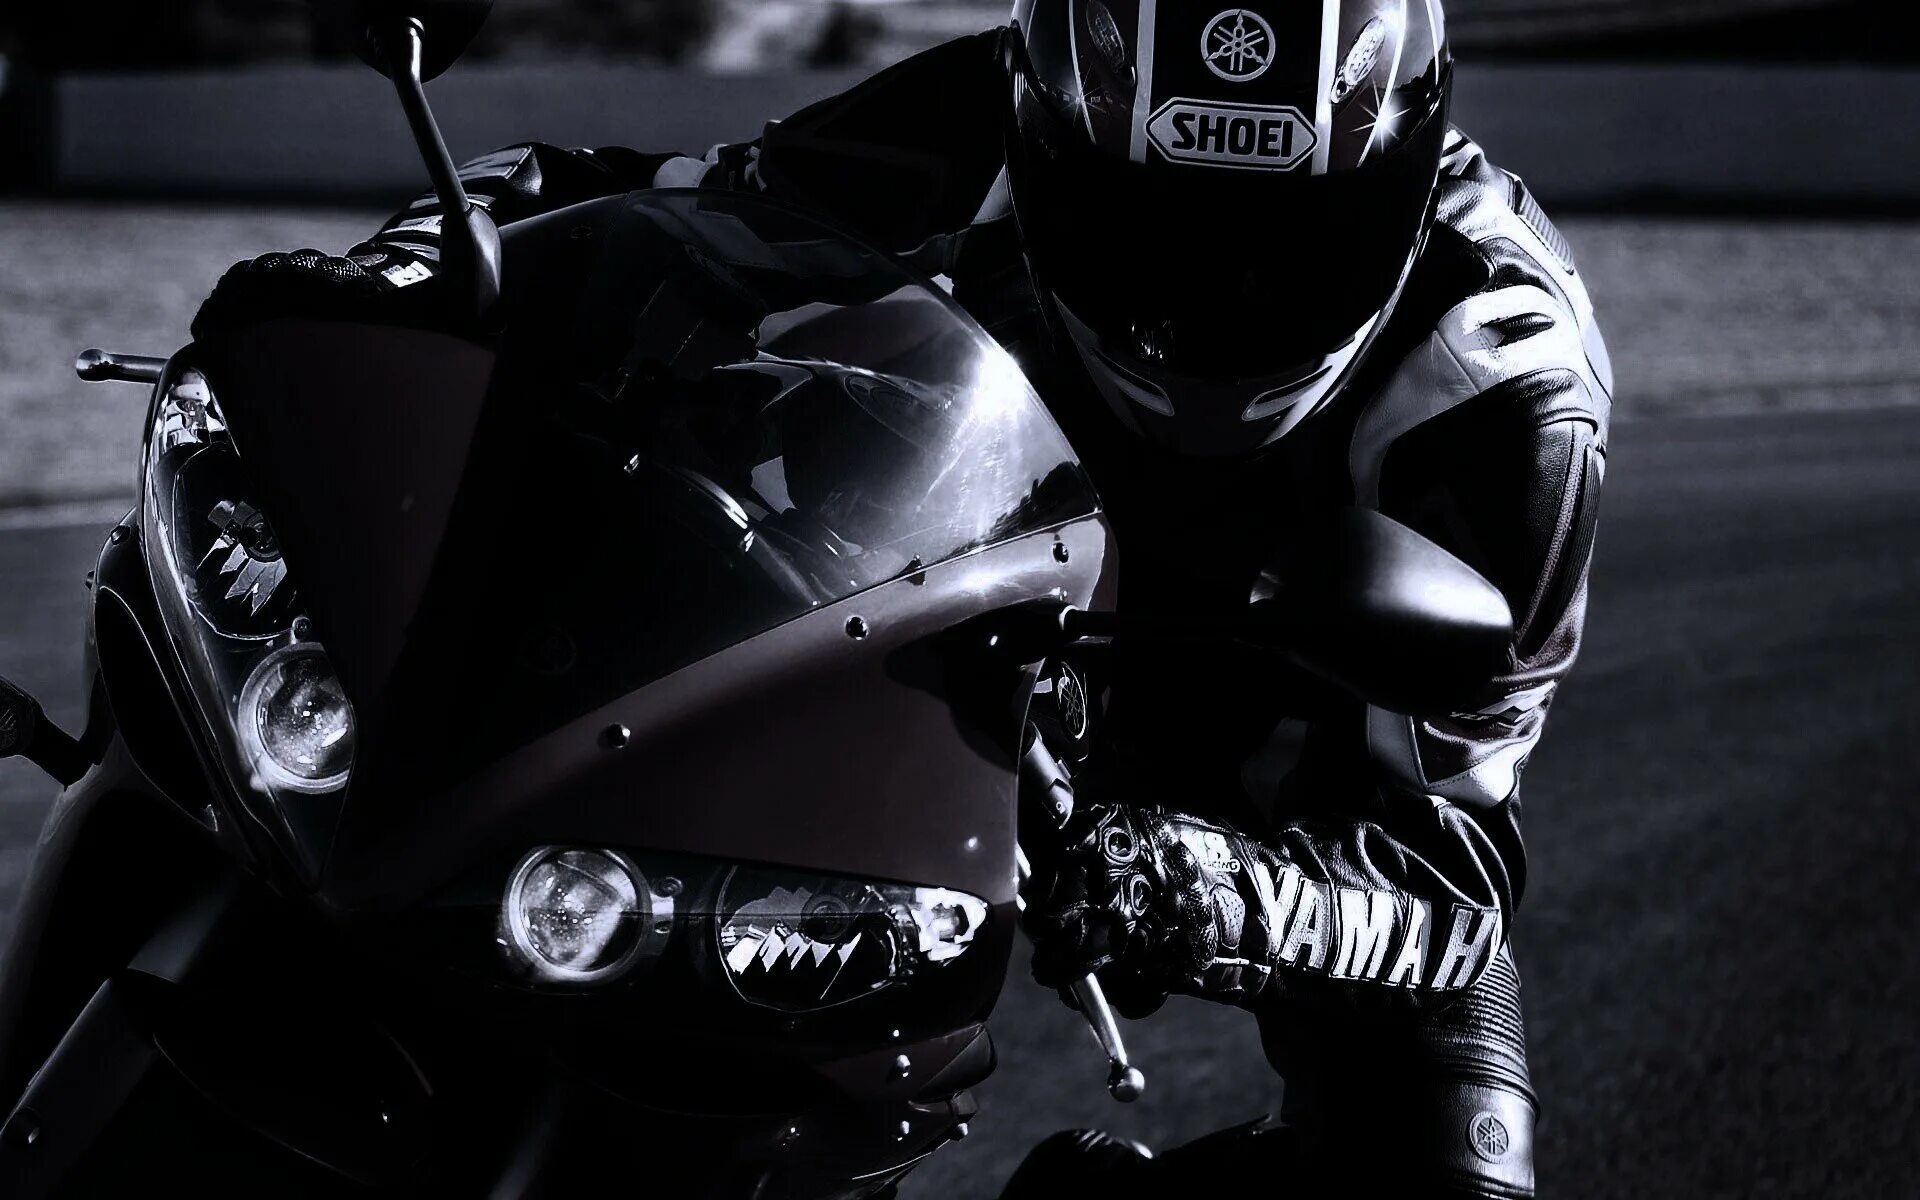 Yamaha r6 черный с мотогонщиком. Ямаха р1 черная. Мотоциклист. Мотоциклист в черном. Картинки на заставку телефона для пацана